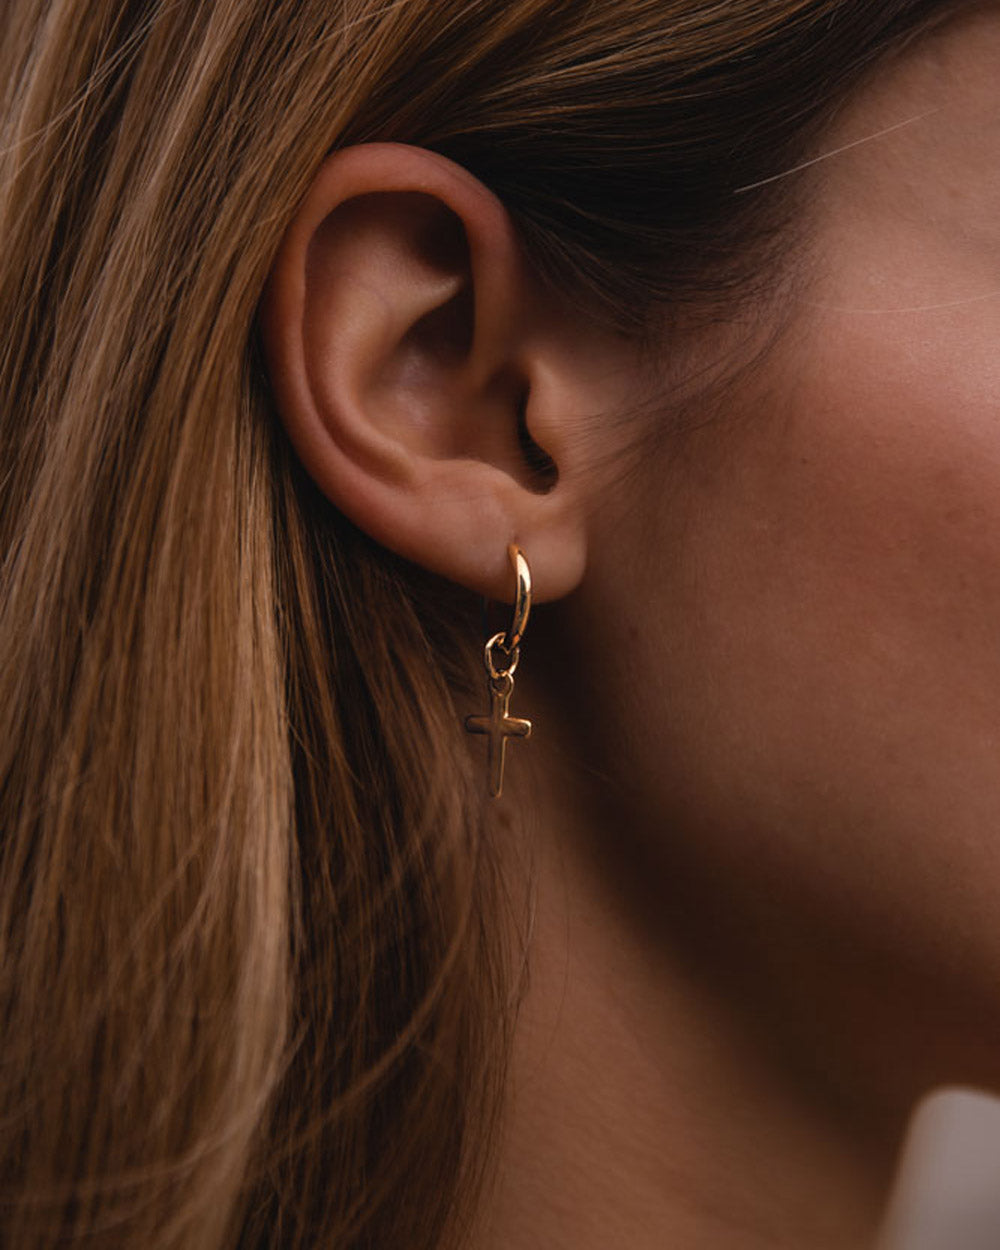 Santa Cruz - Pendiente de acero dorado en la oreja del modelo - pendientes de acero - joyería unisexo online - dicci